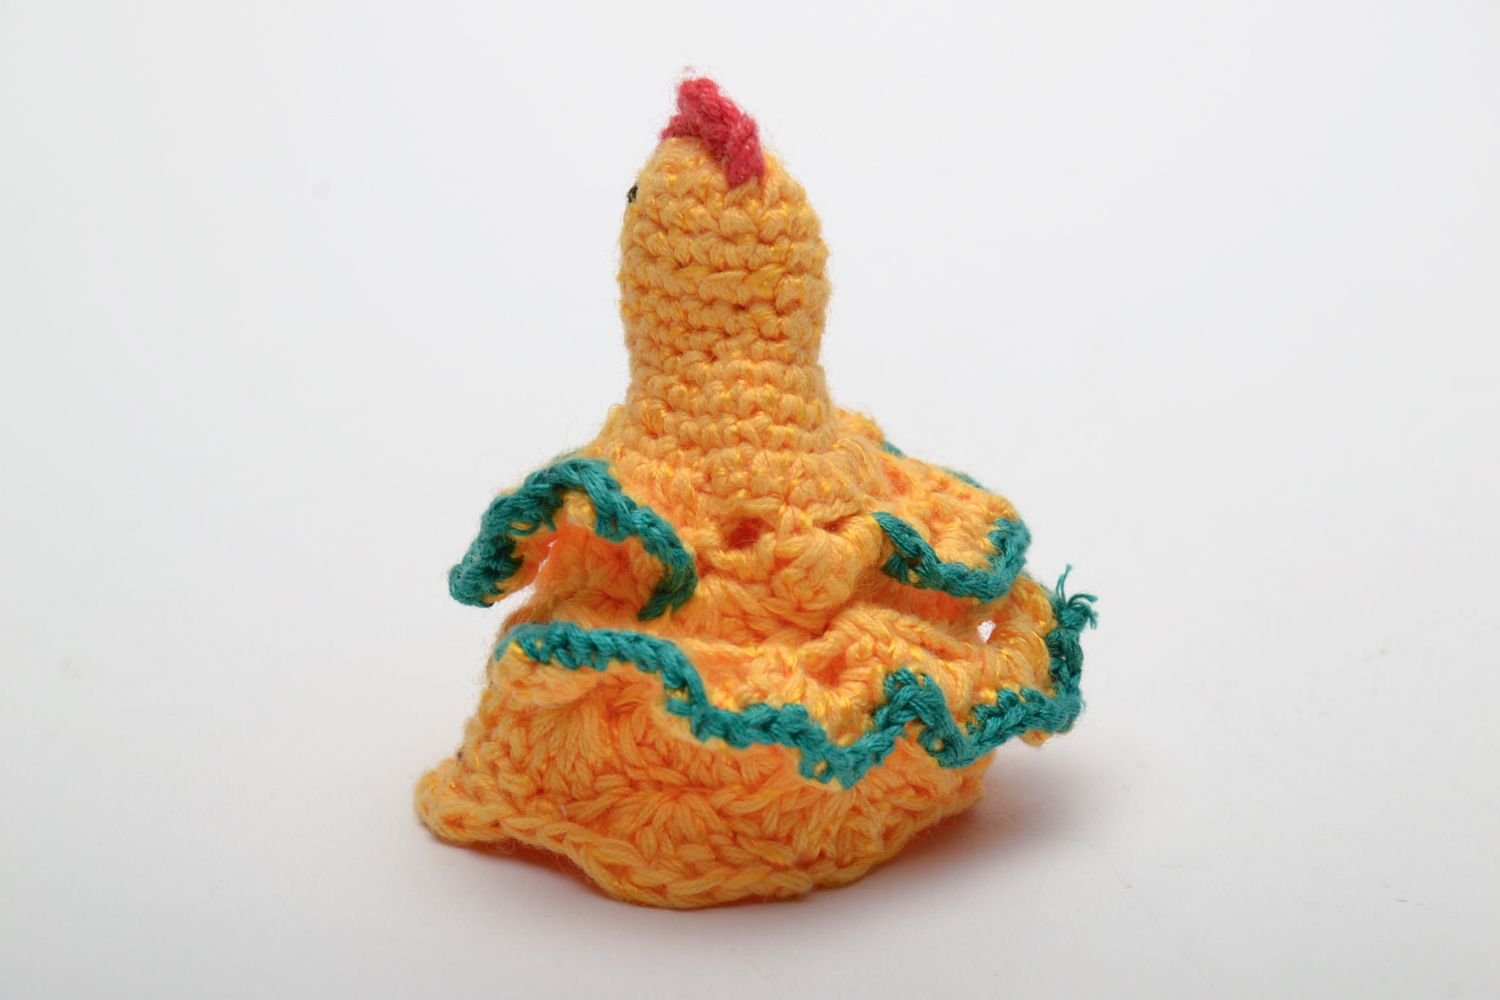 Crochet interior toy chicken photo 3